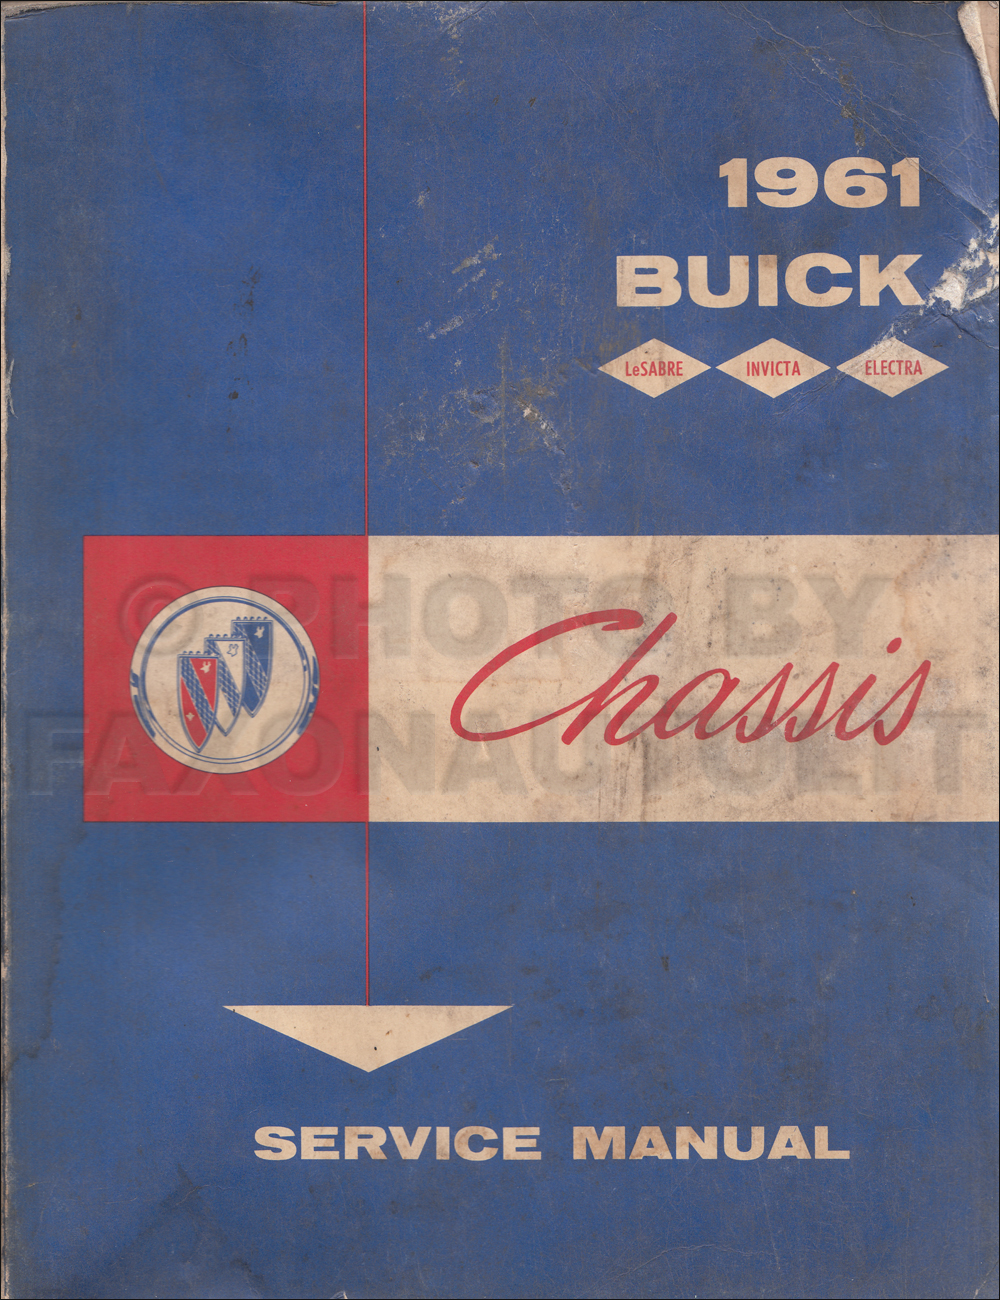 1961 Buick Shop Manual Original - LeSabre, Invicta, Electra 